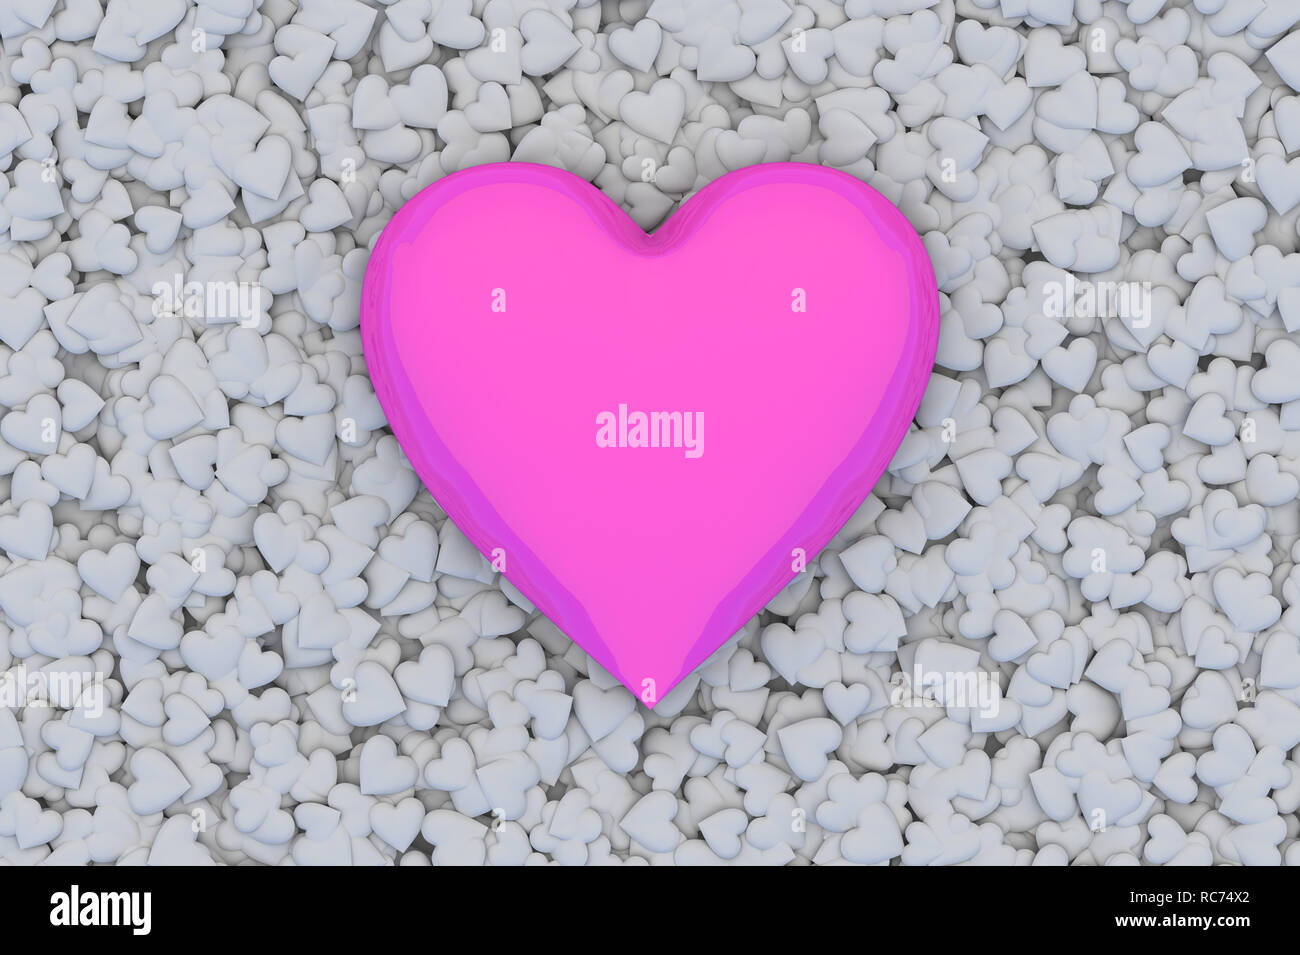 Resumen del día de San Valentín de Fondo 3D con grandes corazones de color rosa sobre fondo gris Foto de stock